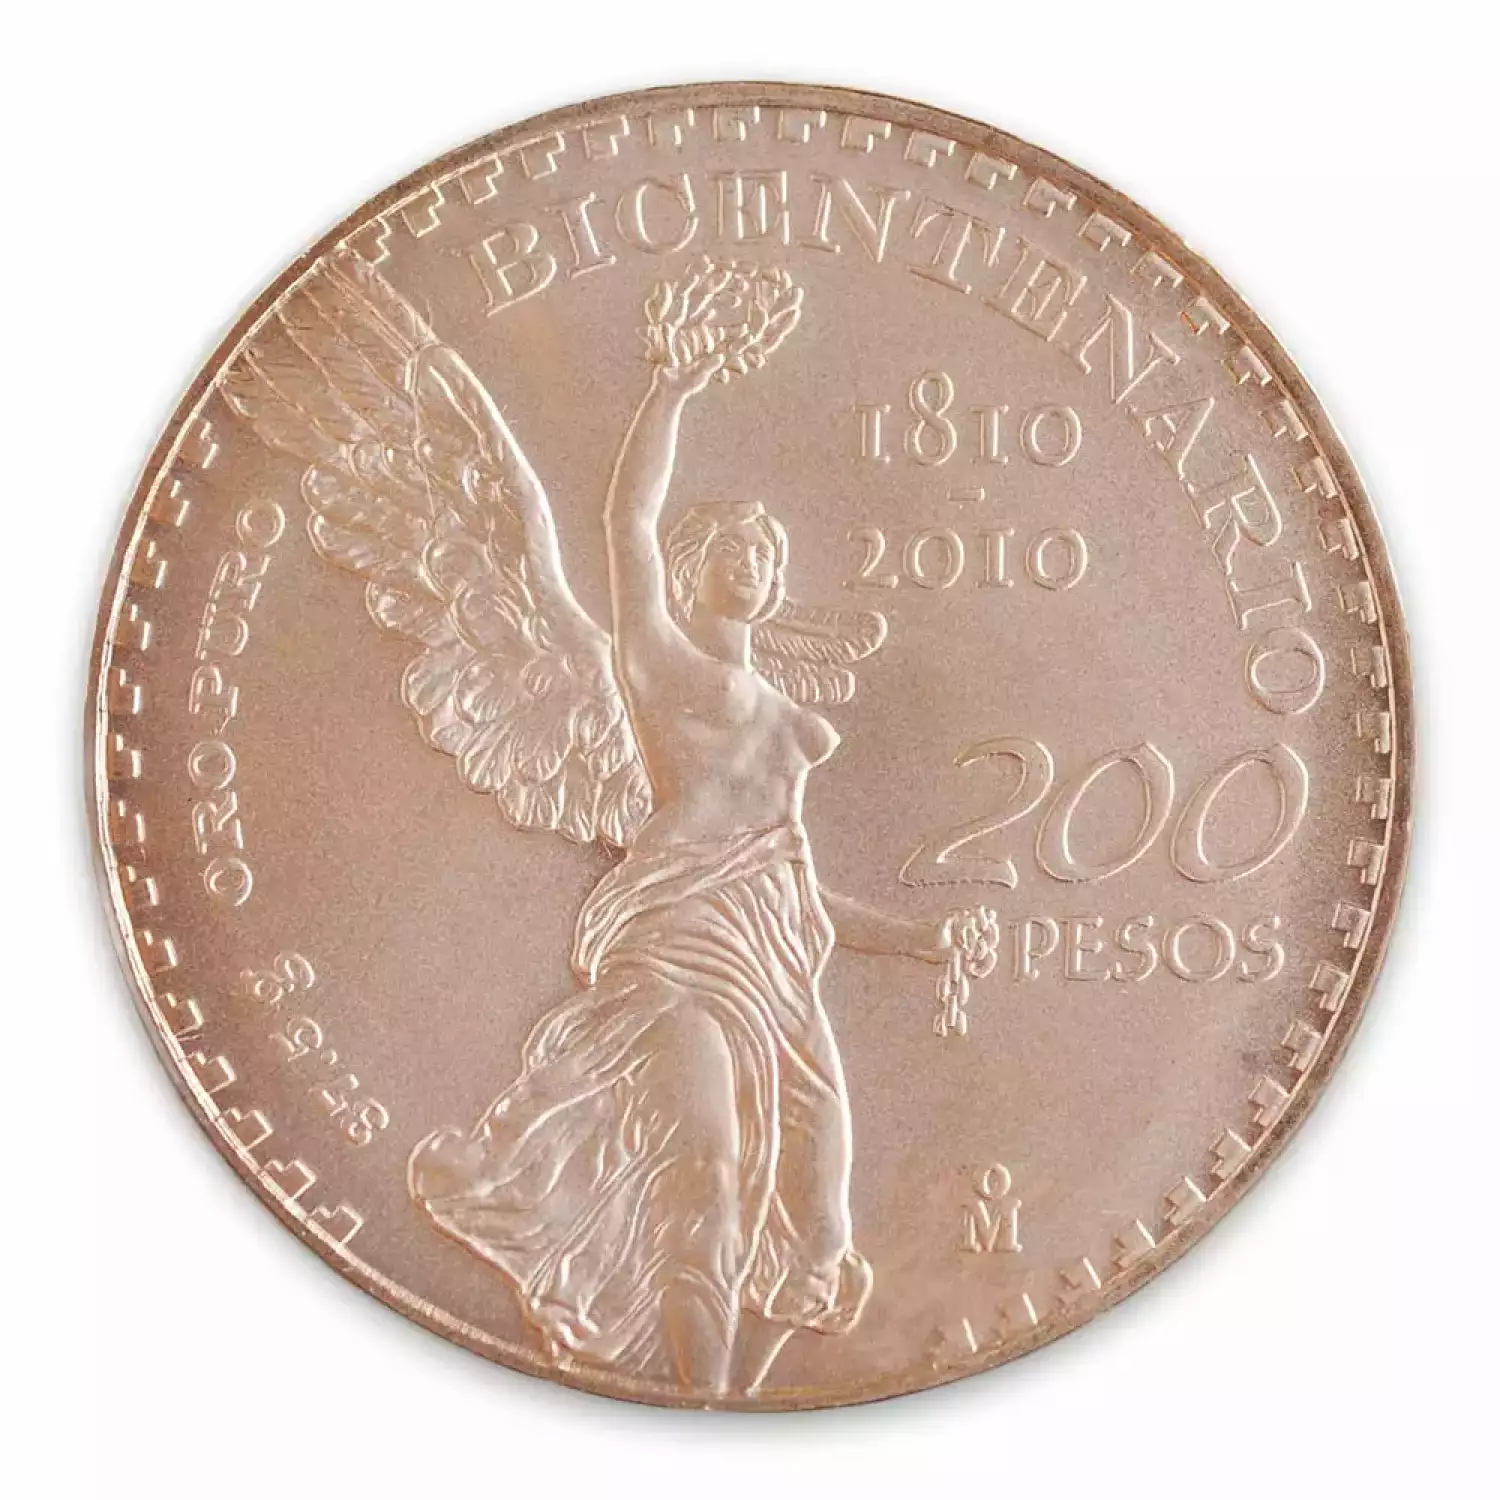 Mexican 200 Peso Gold Coin - Bicentenario (2)